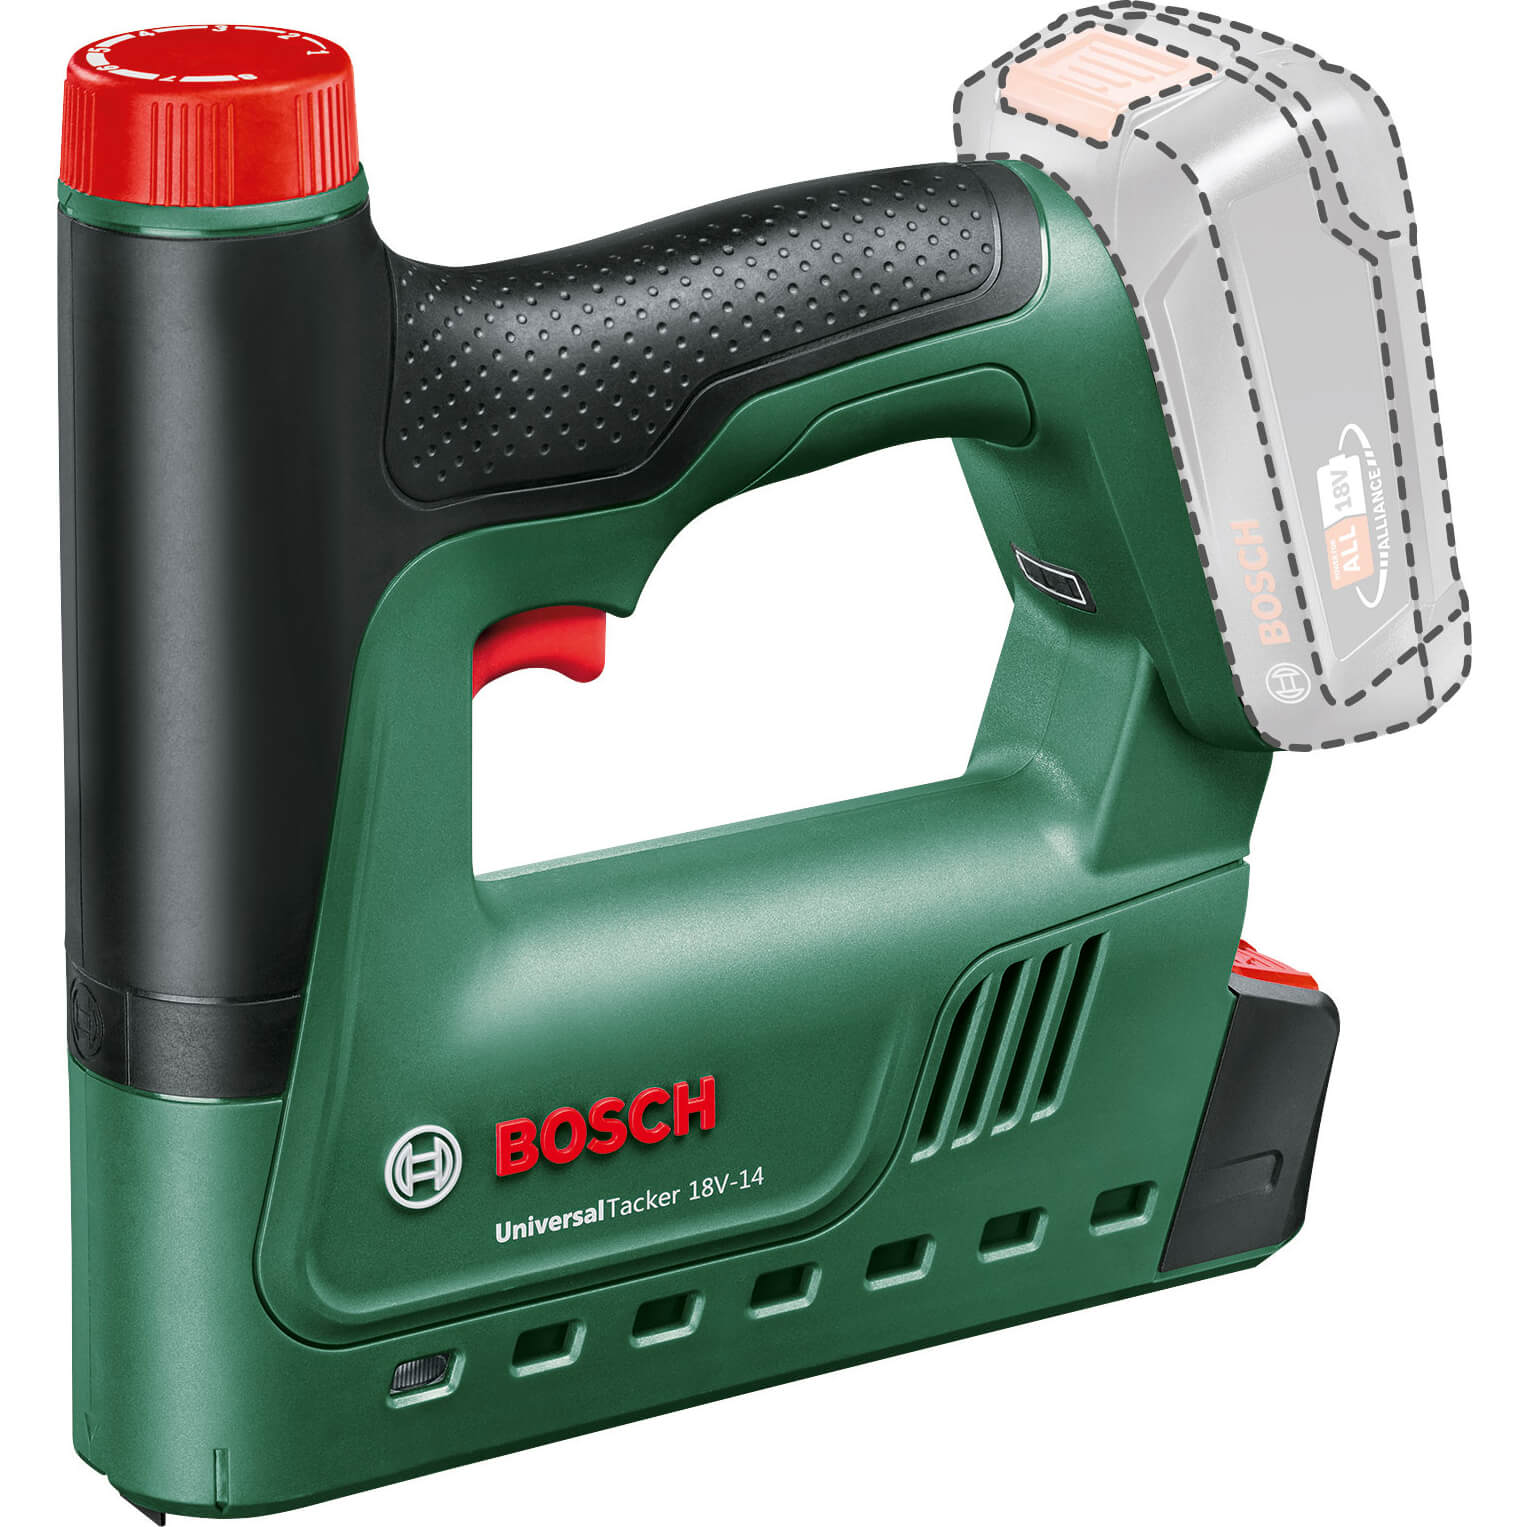 Bosch UNIVERSAL TACKER 18V-14 P4A 18v Cordless Nail Tacker and Stapler No Batteries No Charger No Case